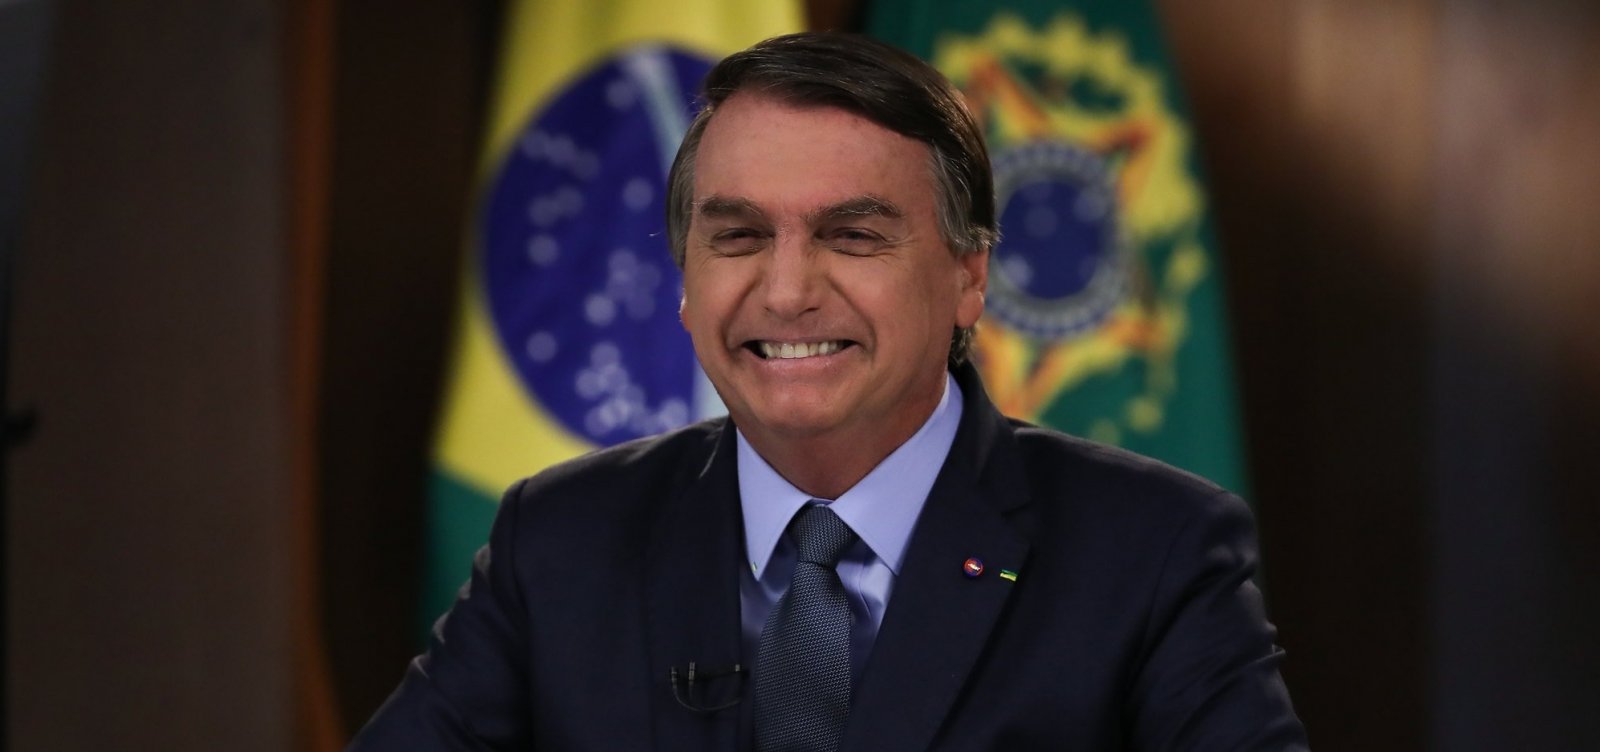 Sem provas, Bolsonaro diz na ONU que queimadas são provocadas por caboclos e índios